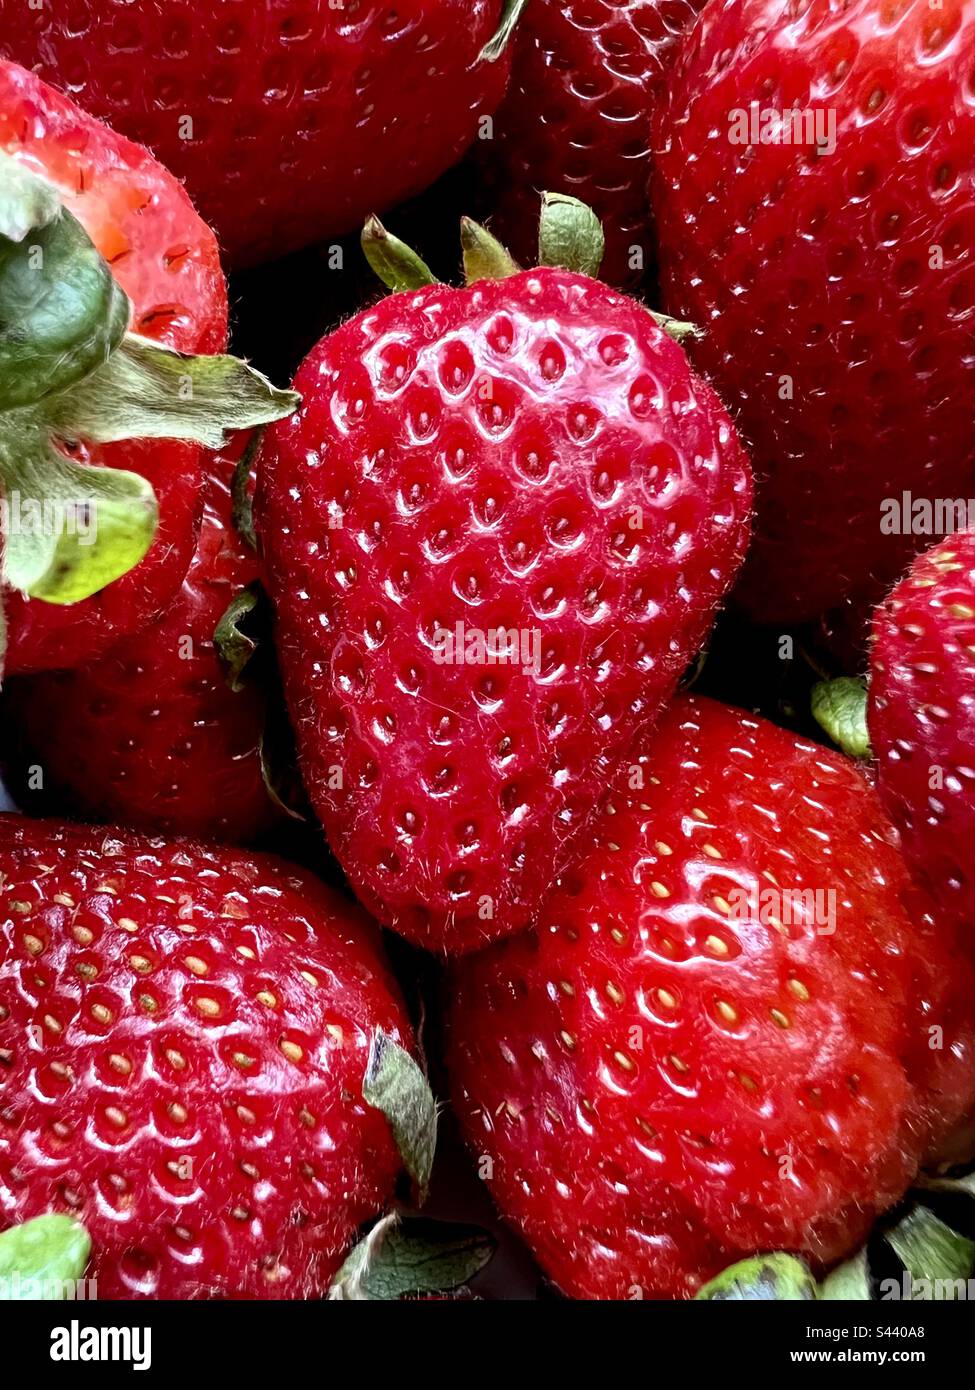 Full frame of ripe strawberries Stock Photo